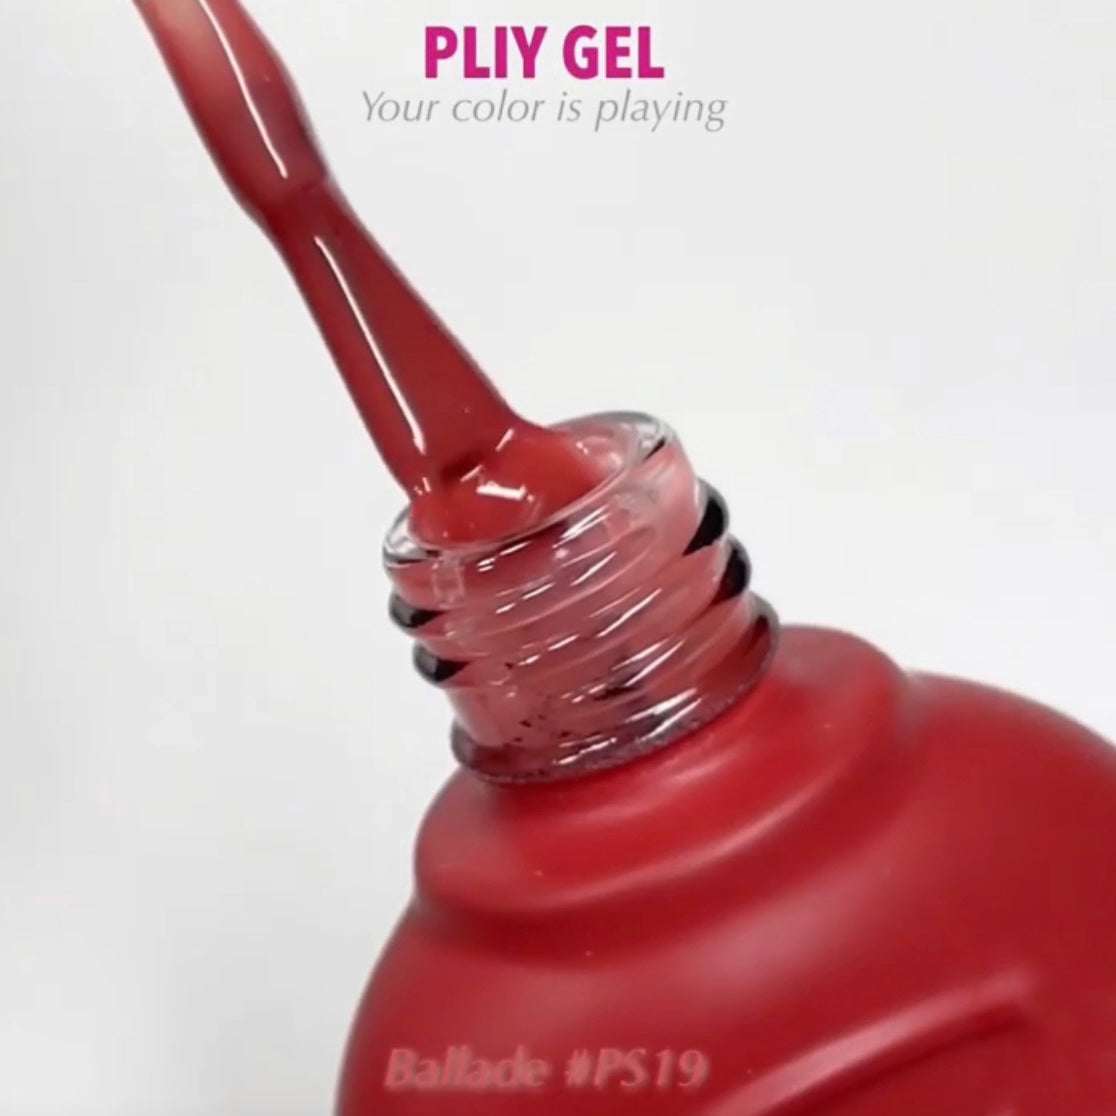 PLIY Gel Color PS19 (10 g)